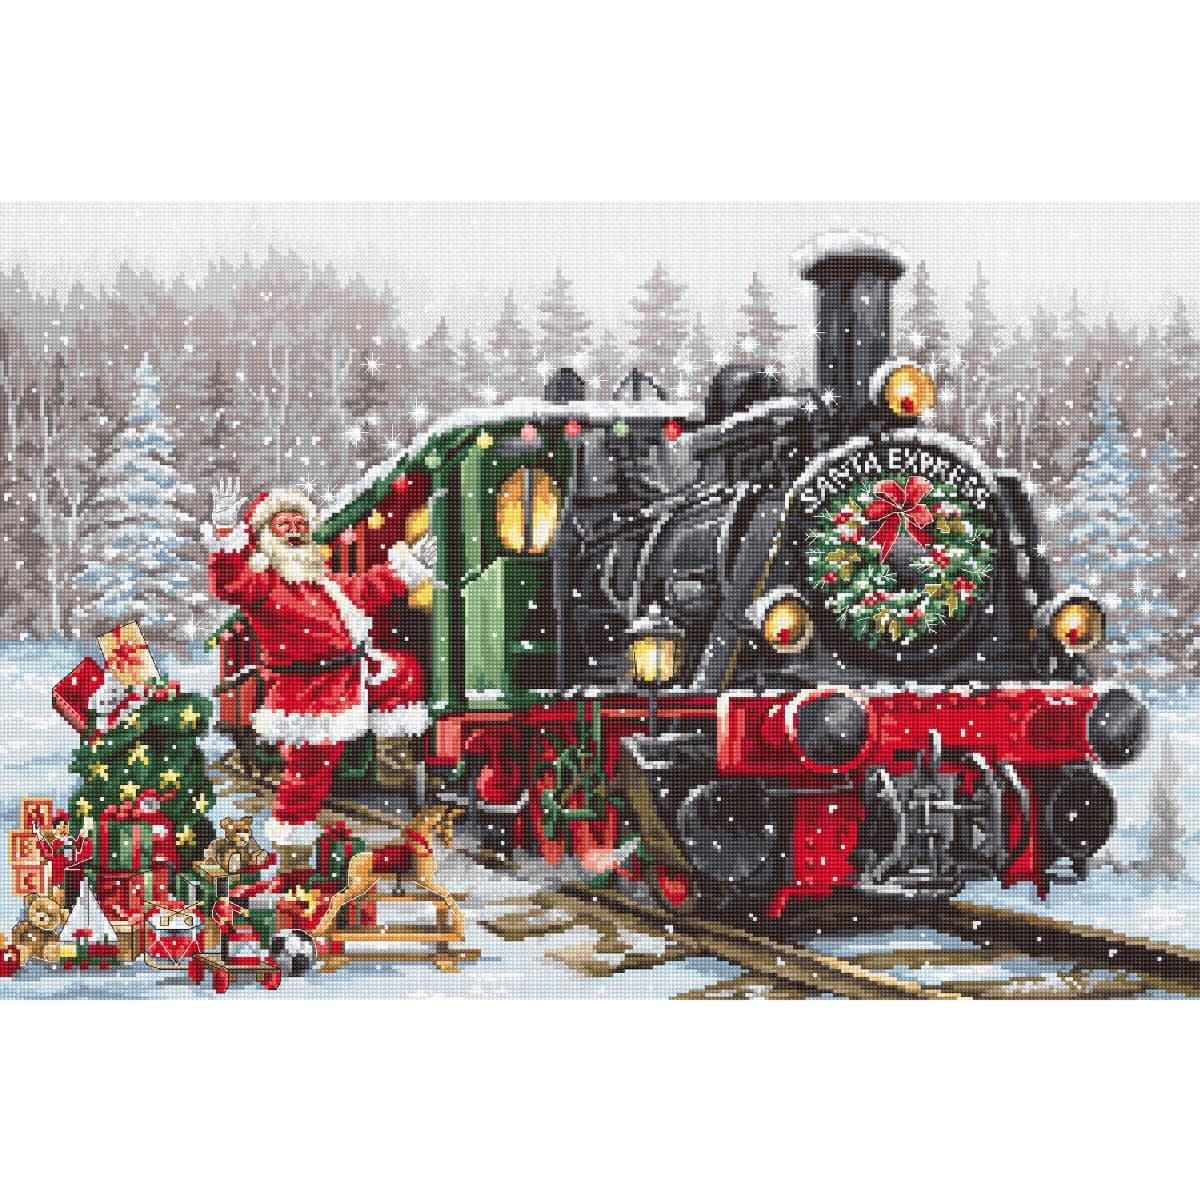 A festive scene shows Santa Claus next to a steam train...